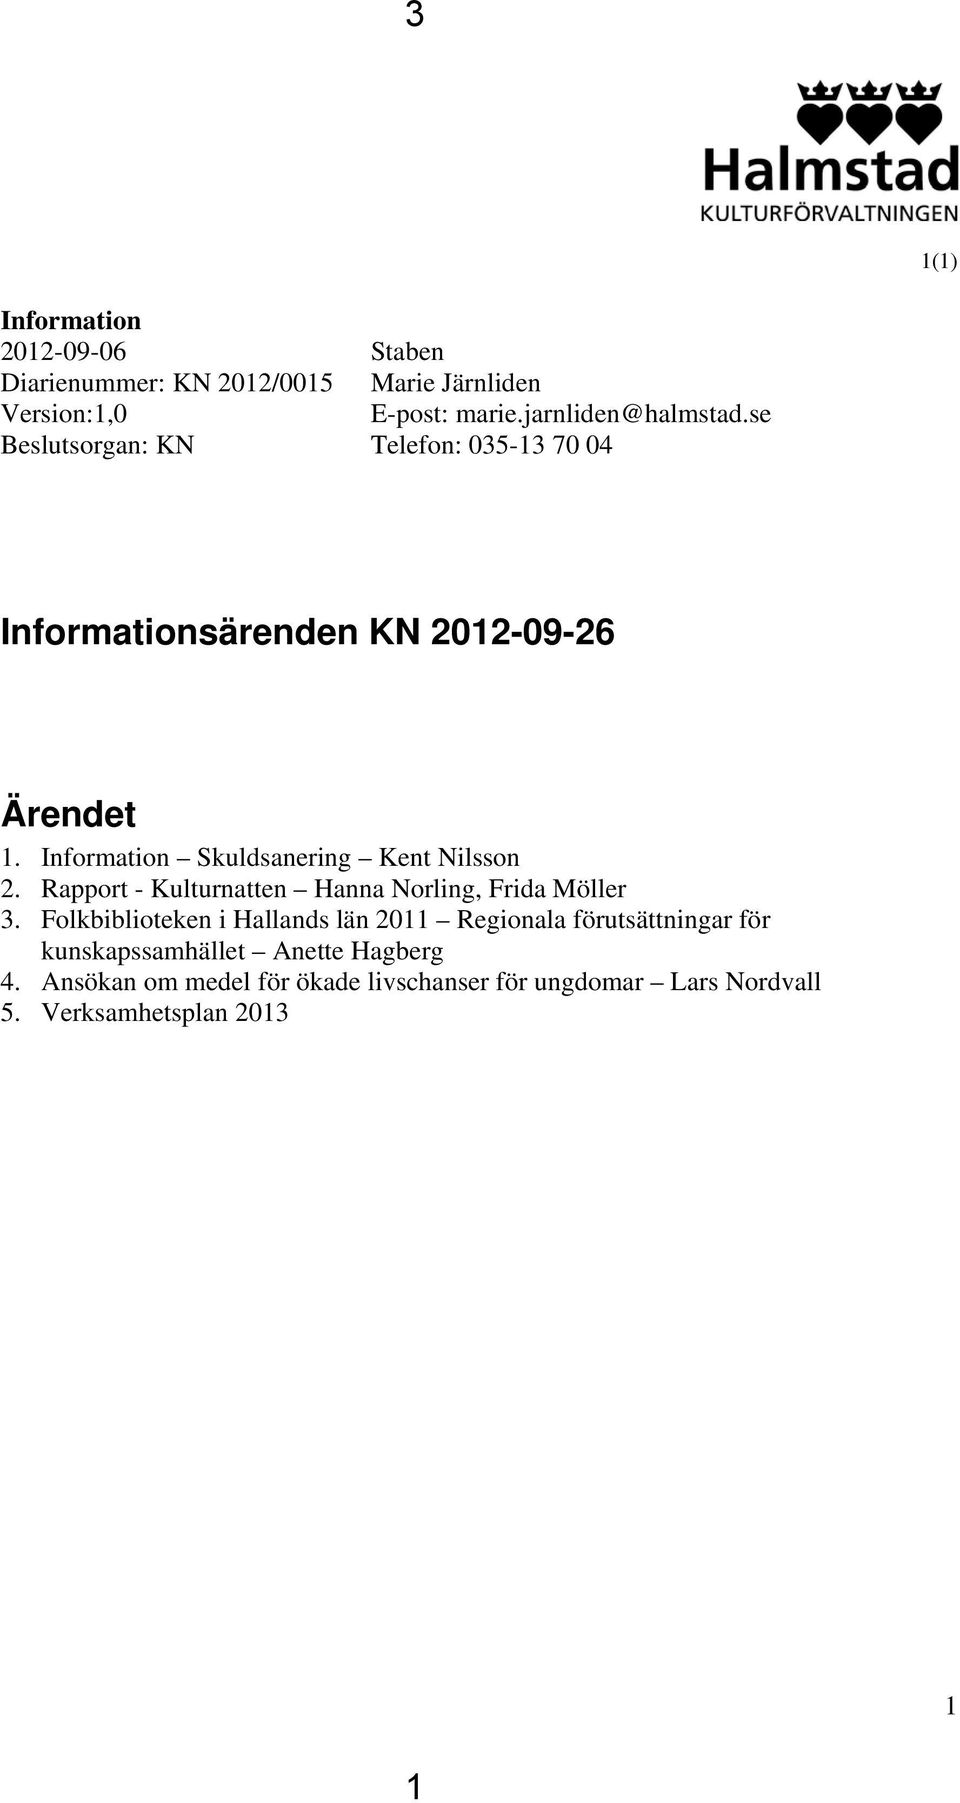 Information Skuldsanering Kent Nilsson 2. Rapport - Kulturnatten Hanna Norling, Frida Möller 3.